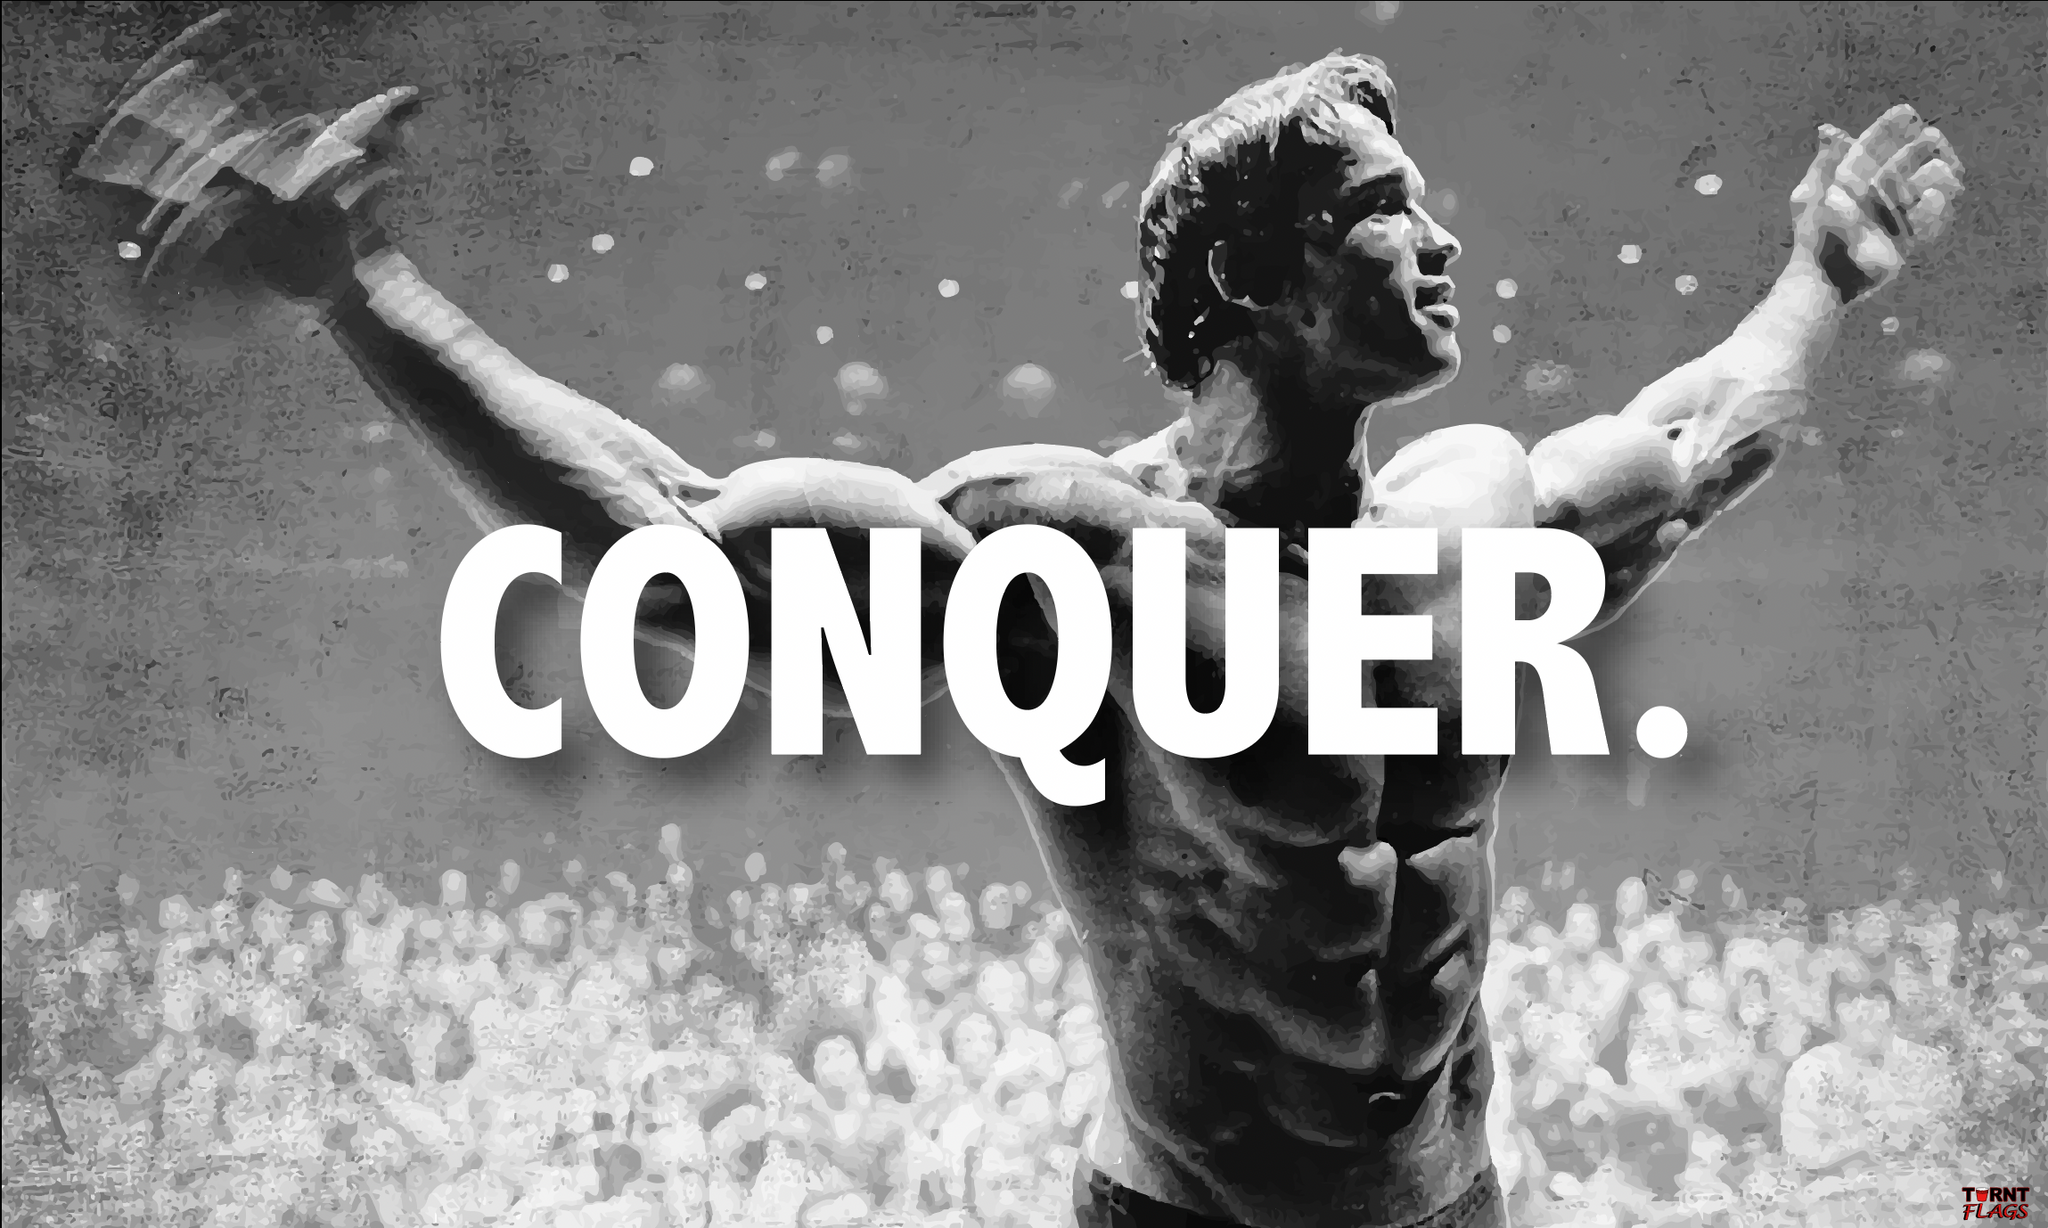 Conquer.